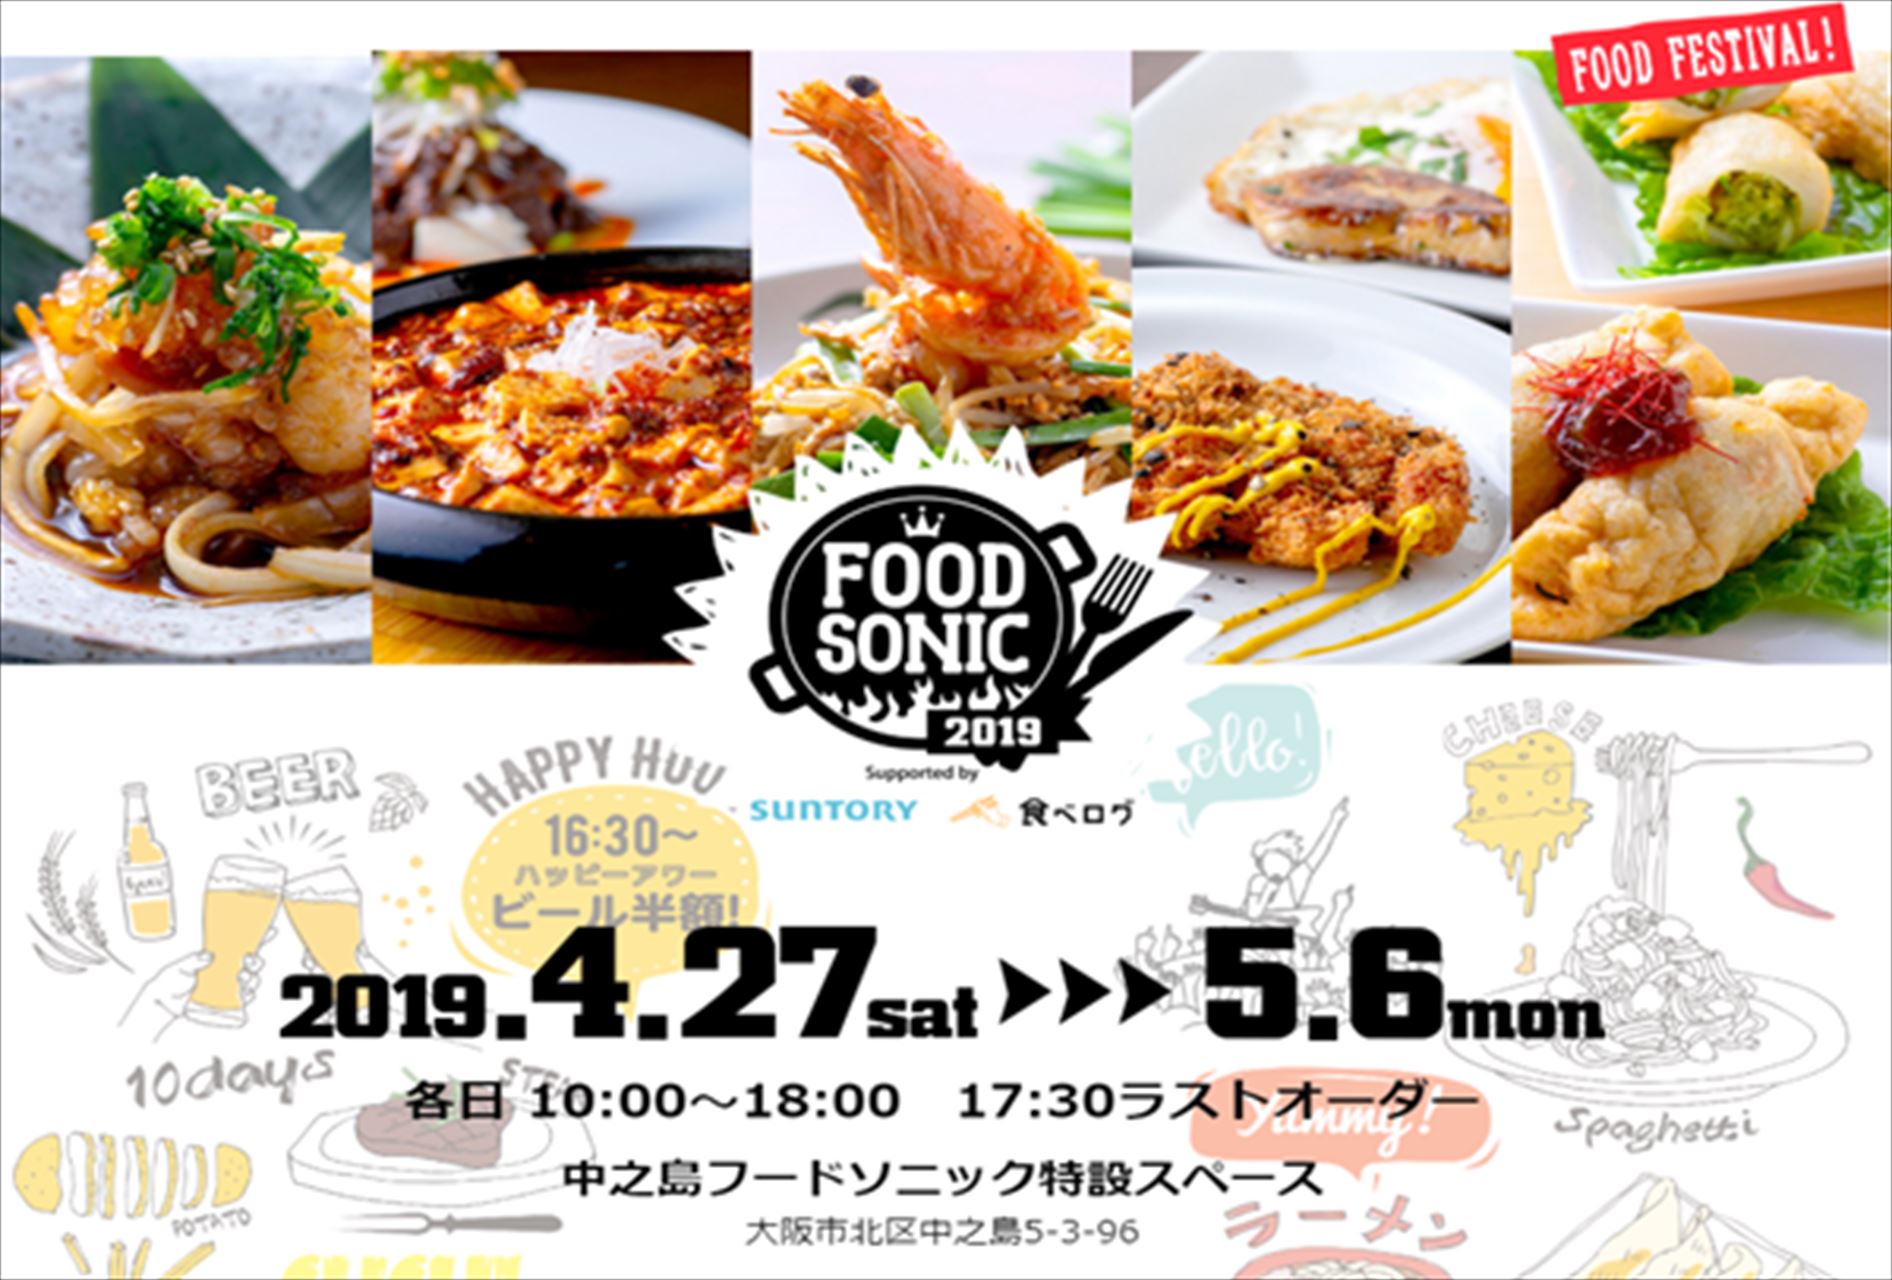 関西最大級のフードフェスティバル「FOOD SONIC 2019 IN 中之島」